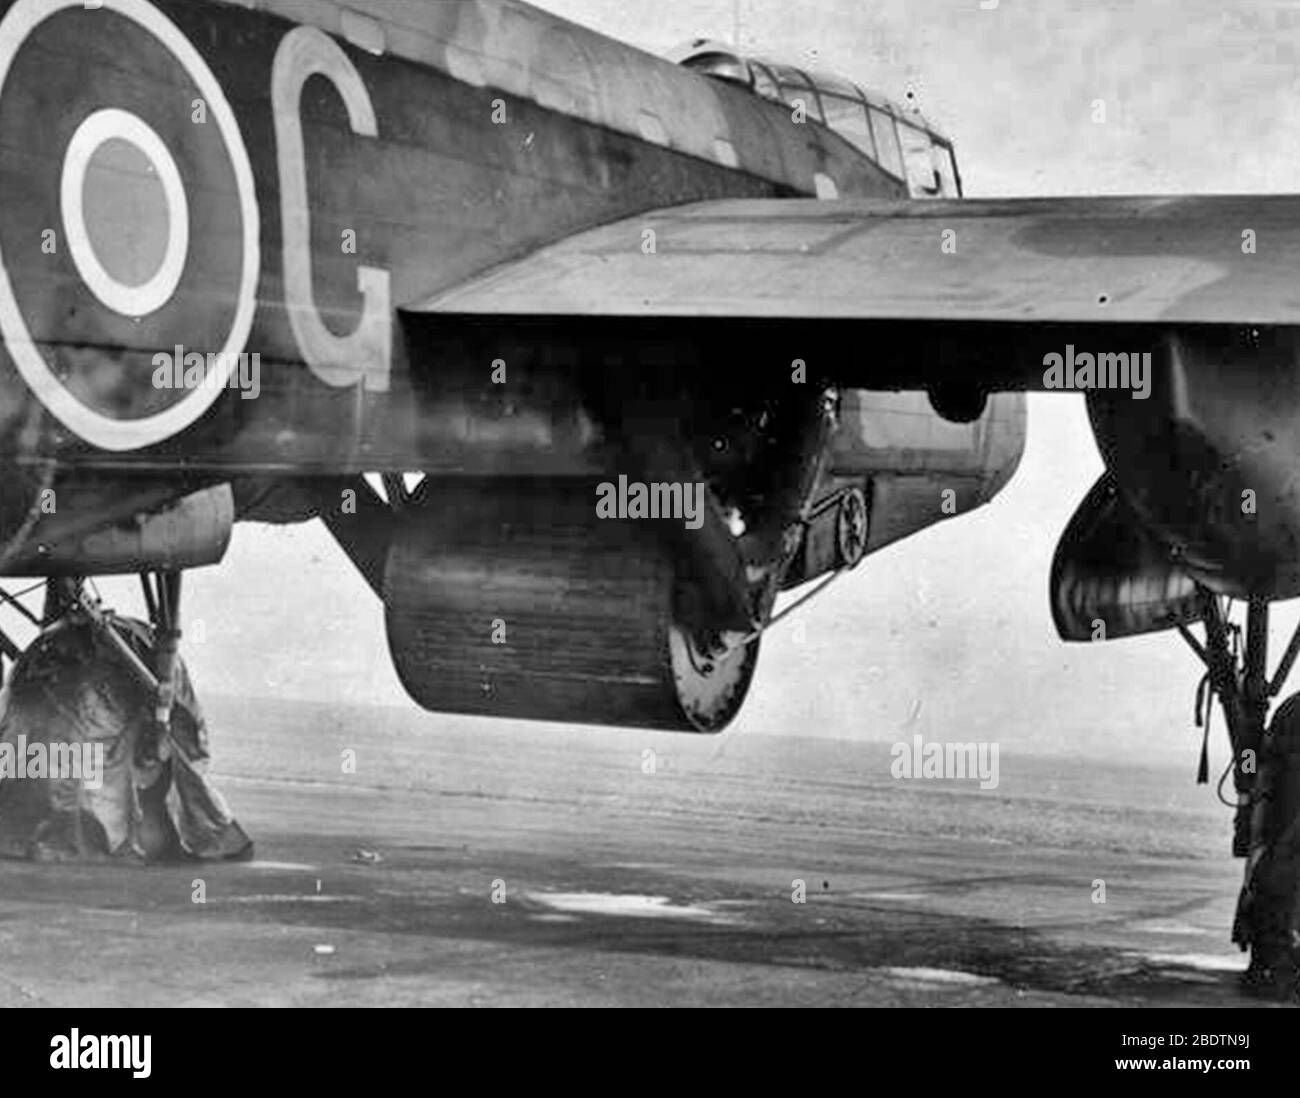 Operation CHASTISE: Der Angriff auf die Möhne, Eder und Sorpe Dams durch die 617 Squadron RAF in der Nacht vom 16. Auf den 17. Mai 1943. Eine praktische Waffe mit 10.000 lbs "Aufrechterhaltung", die an der Bombentracht von Wing Commander Guy Gibsons Avro Type 464 (Provisioning) Lancaster, ED932/G "AJ-G" in Manston, Kent angebracht ist, während sie Fallversuche vor Reculve, Mai 1943, durchführte Stockfoto